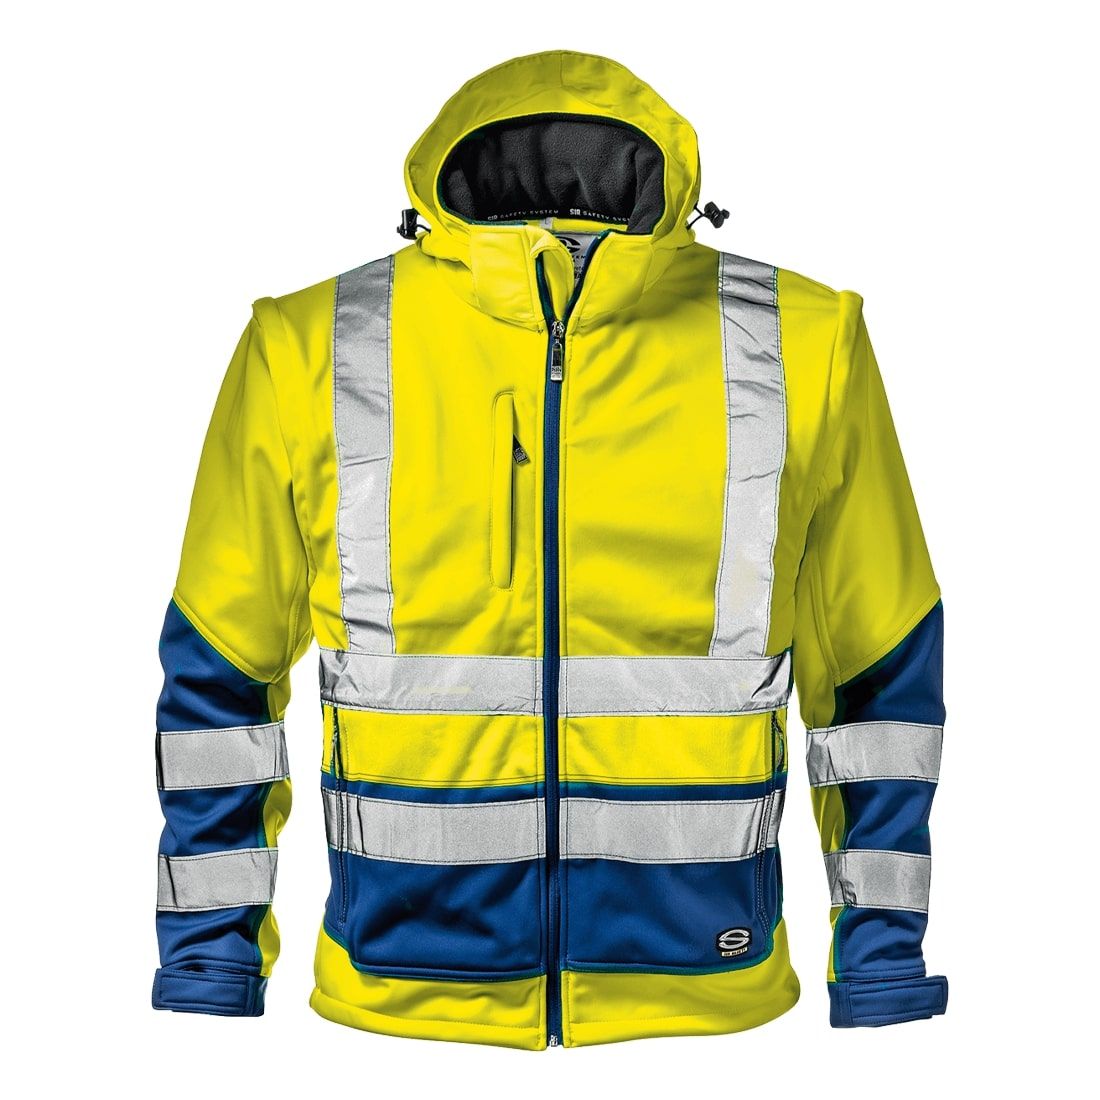 Sir Safety Starmax Jól Láthatósági Kabát Hi-Vis Sárga/kék